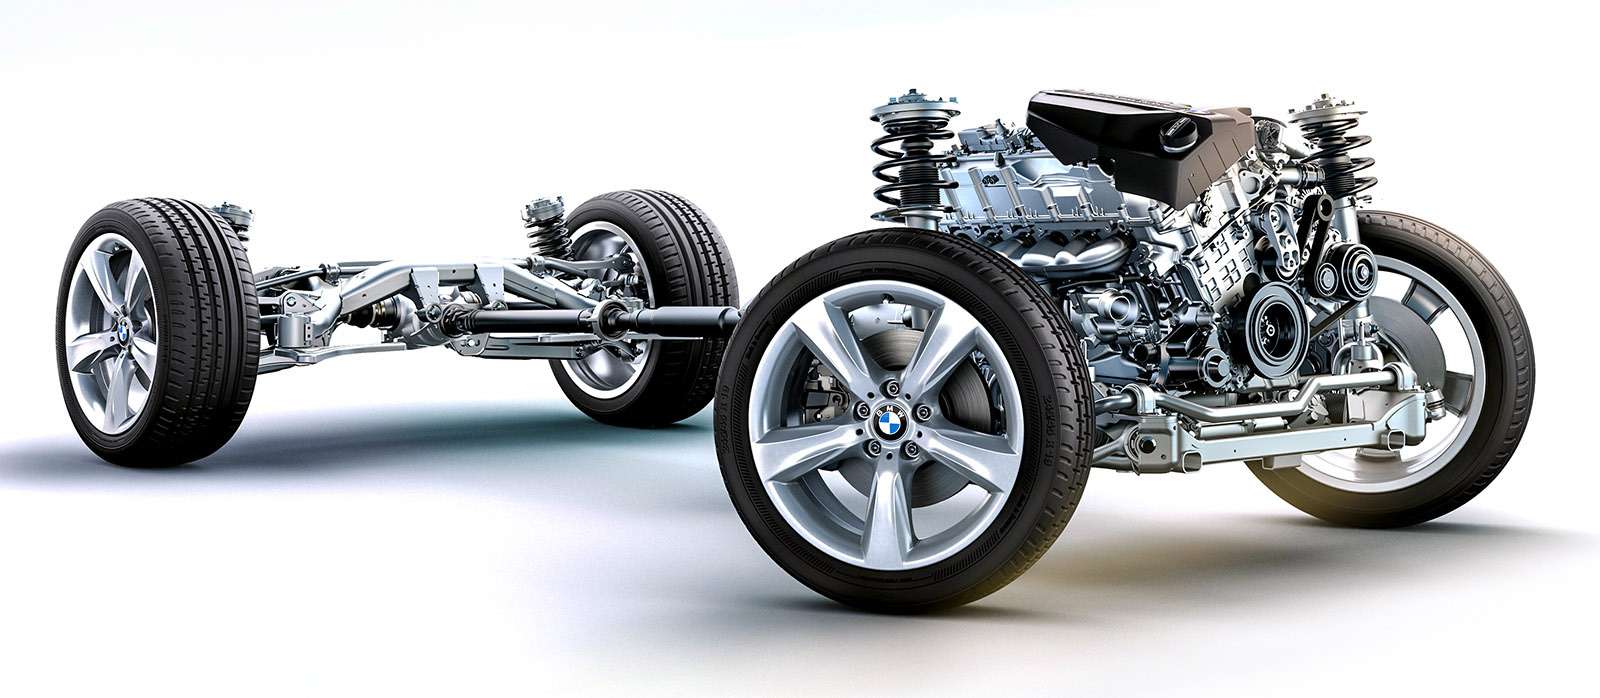 BMW X3 второго поколения — список возможных проблем — фото 771813